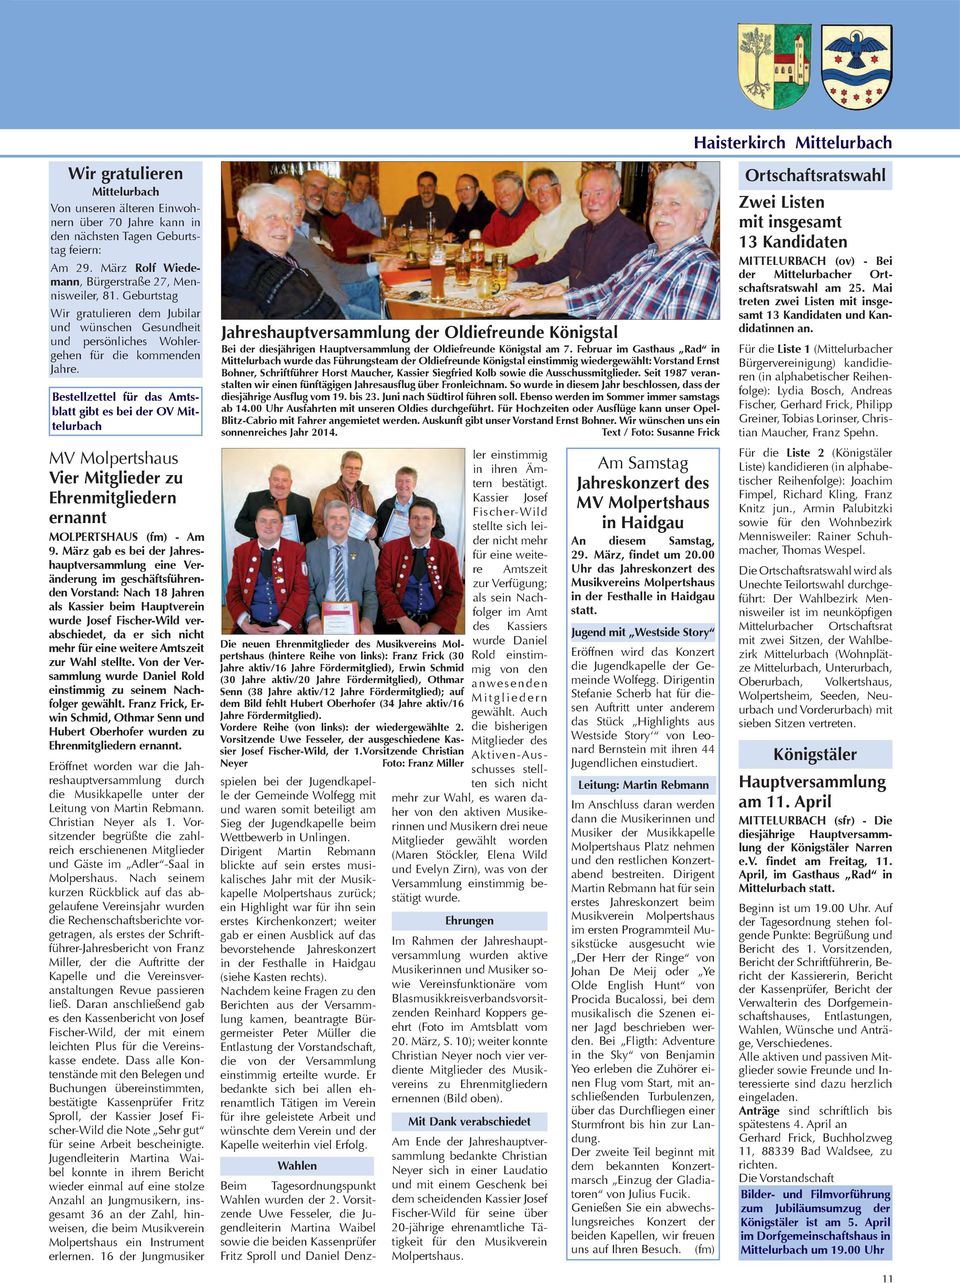 Bestellzettel für das Amtsblatt gibt es bei der OV Mittelurbach MV Molpertshaus Vier Mitglieder zu Ehrenmitgliedern ernannt MOLPERTSHAUS (fm) - Am 9.